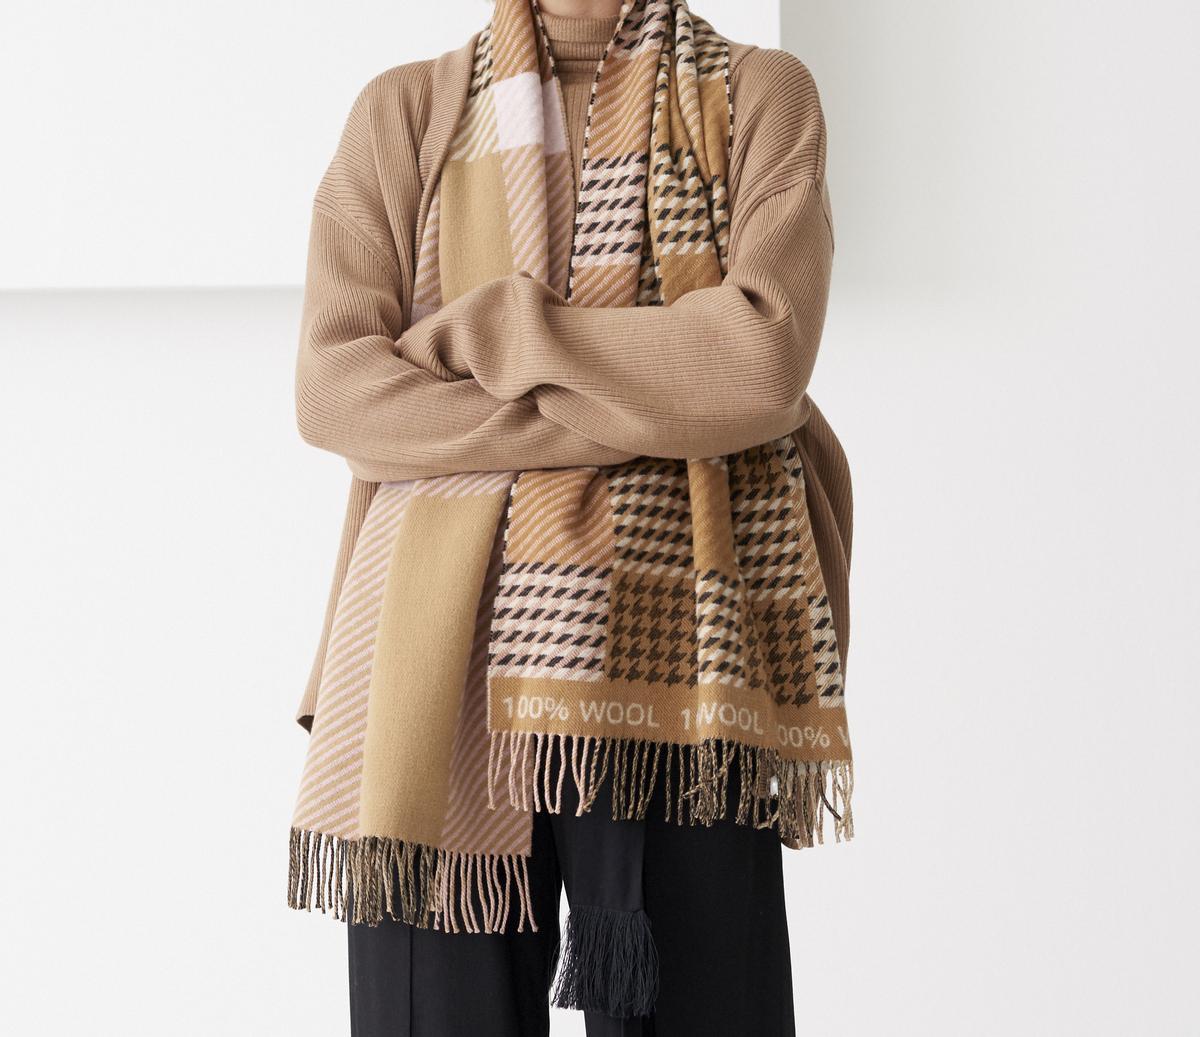 Una bufanda modelo Elgin del príncipe Carlos de inglaterra.